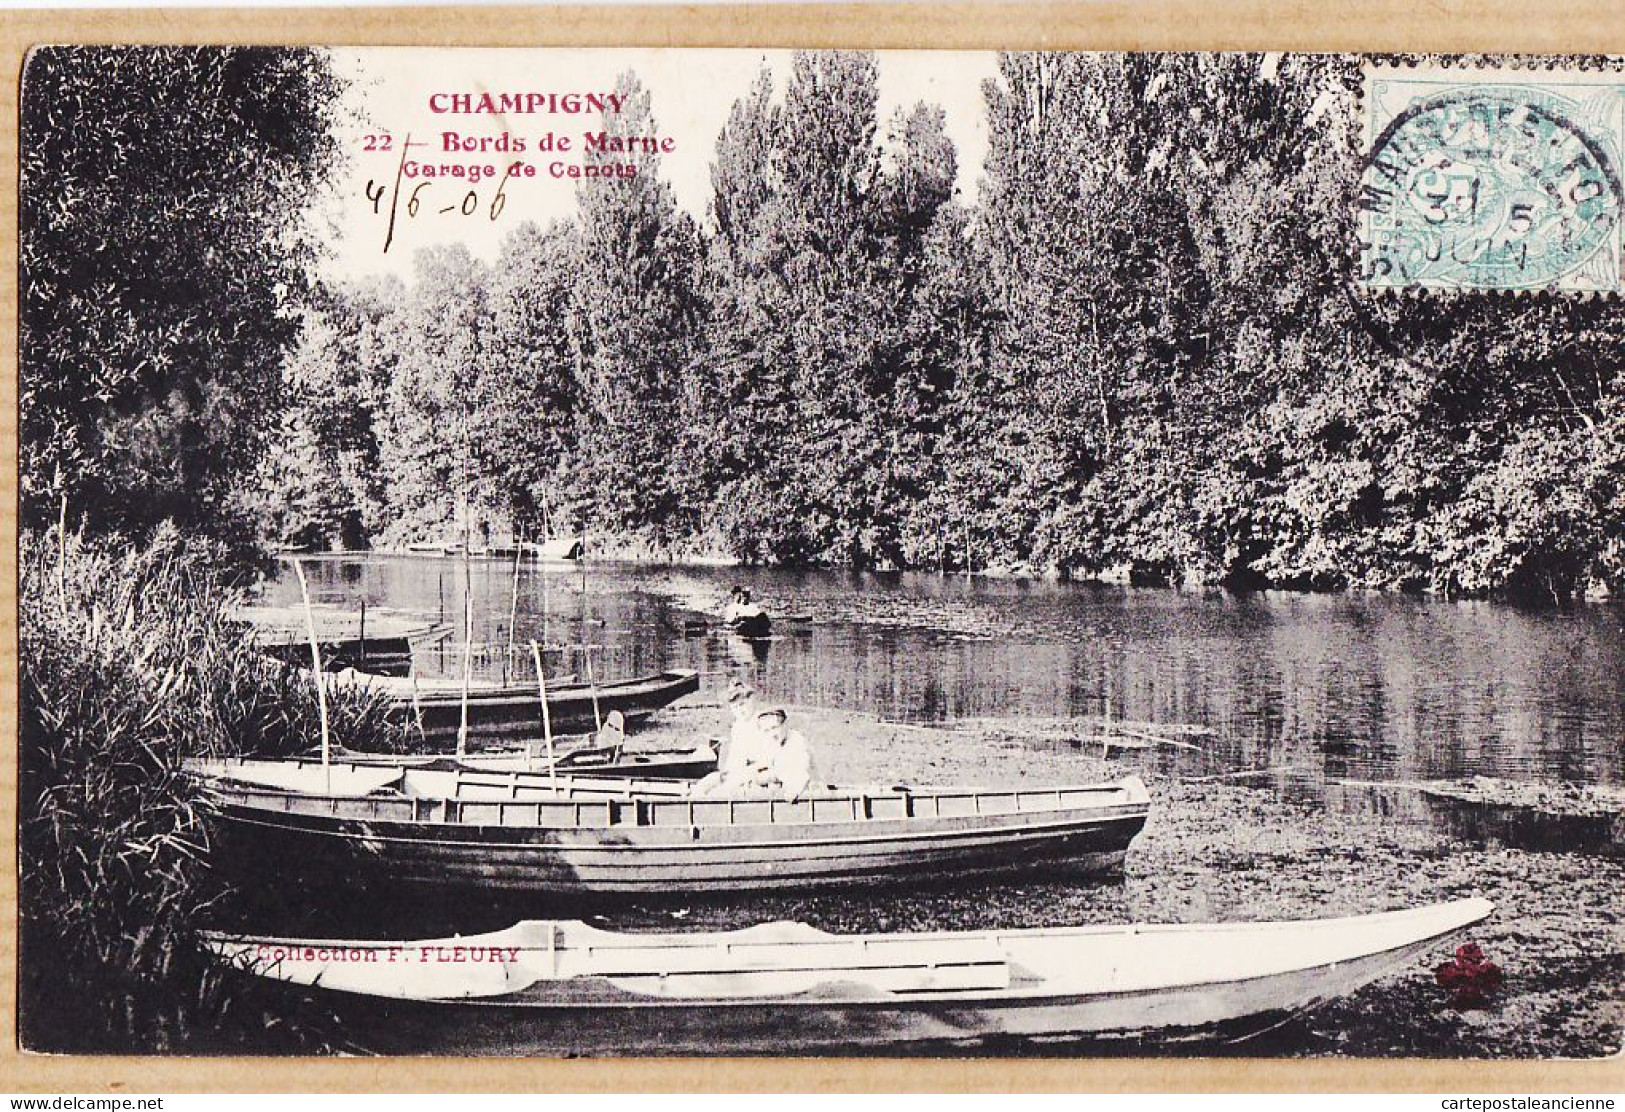 04937 / CHAMPIGNY (94) Bords De MARNE Garage De Canots 1906 à PIETREMENT Rue Lebouteux Paris-FLEURY 22 - Champigny Sur Marne